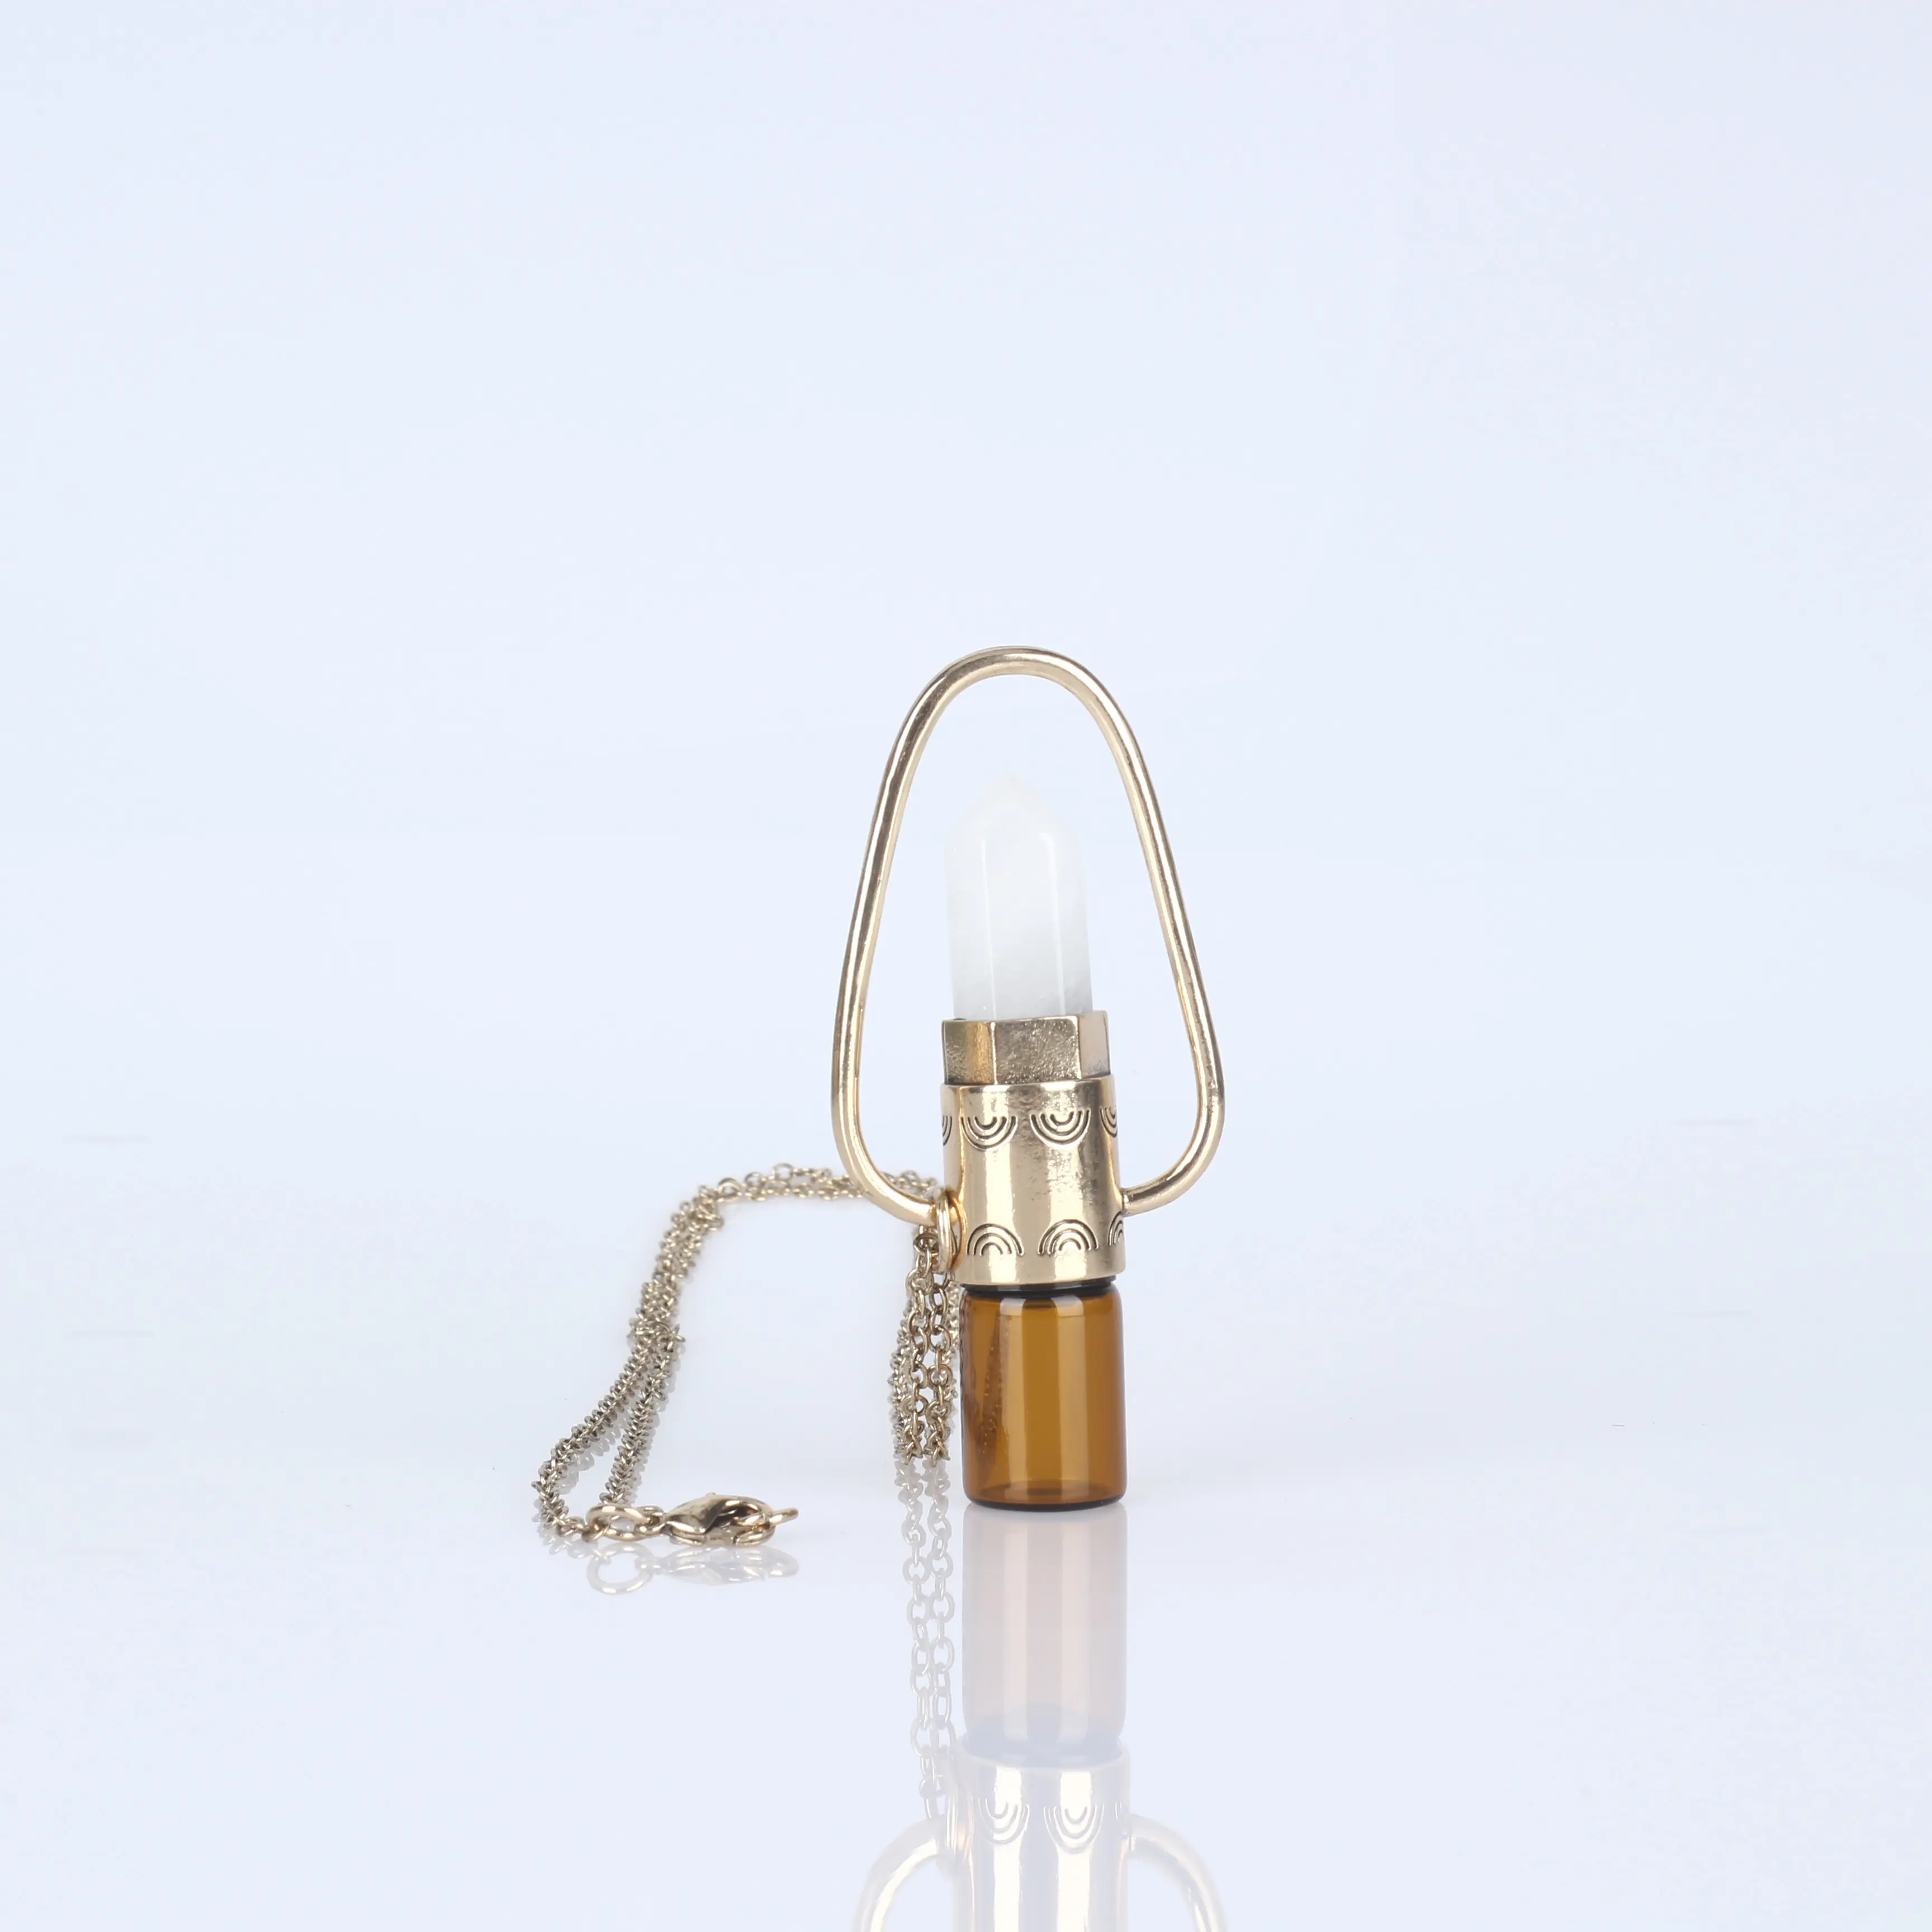 Creative עיצוב חן זהב שרשרת בקבוק שמן אתרי שרשרת רולר כדור בקבוק תליון שרשרת